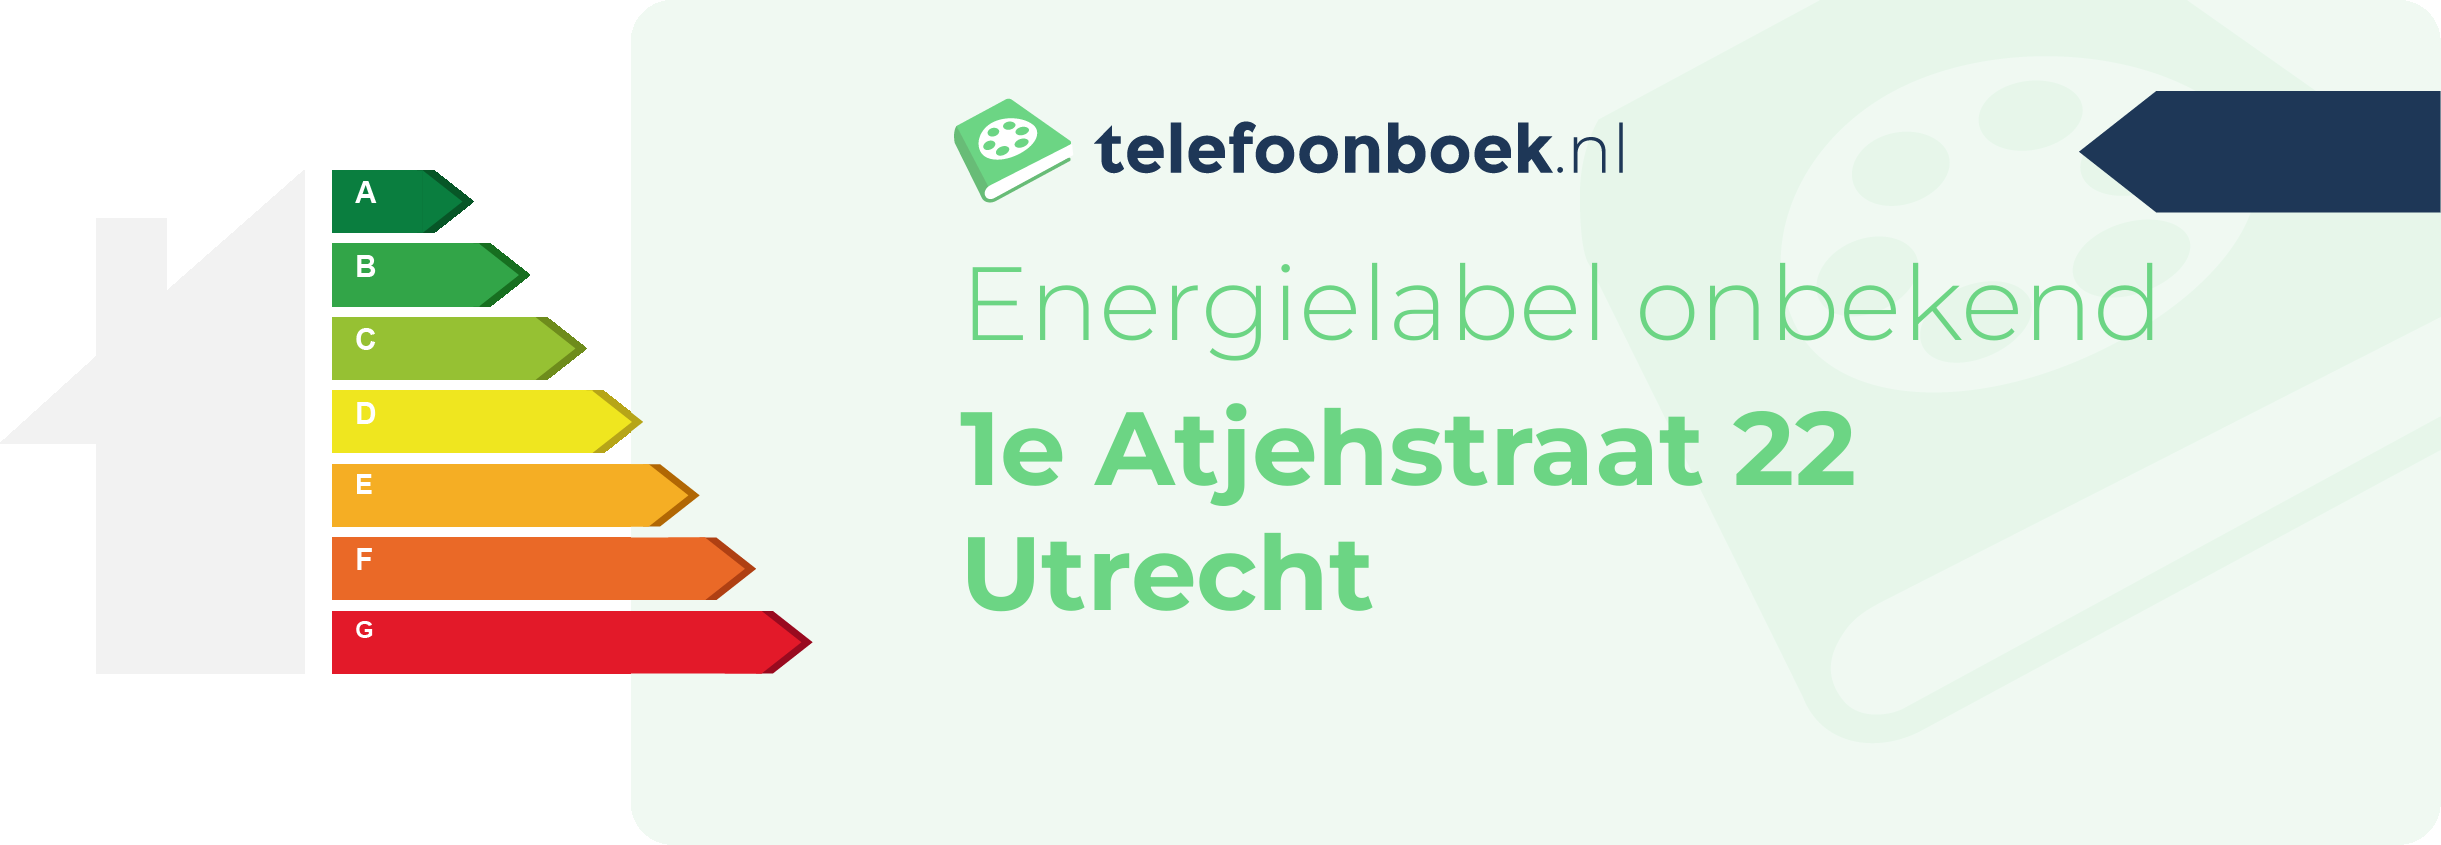 Energielabel 1e Atjehstraat 22 Utrecht